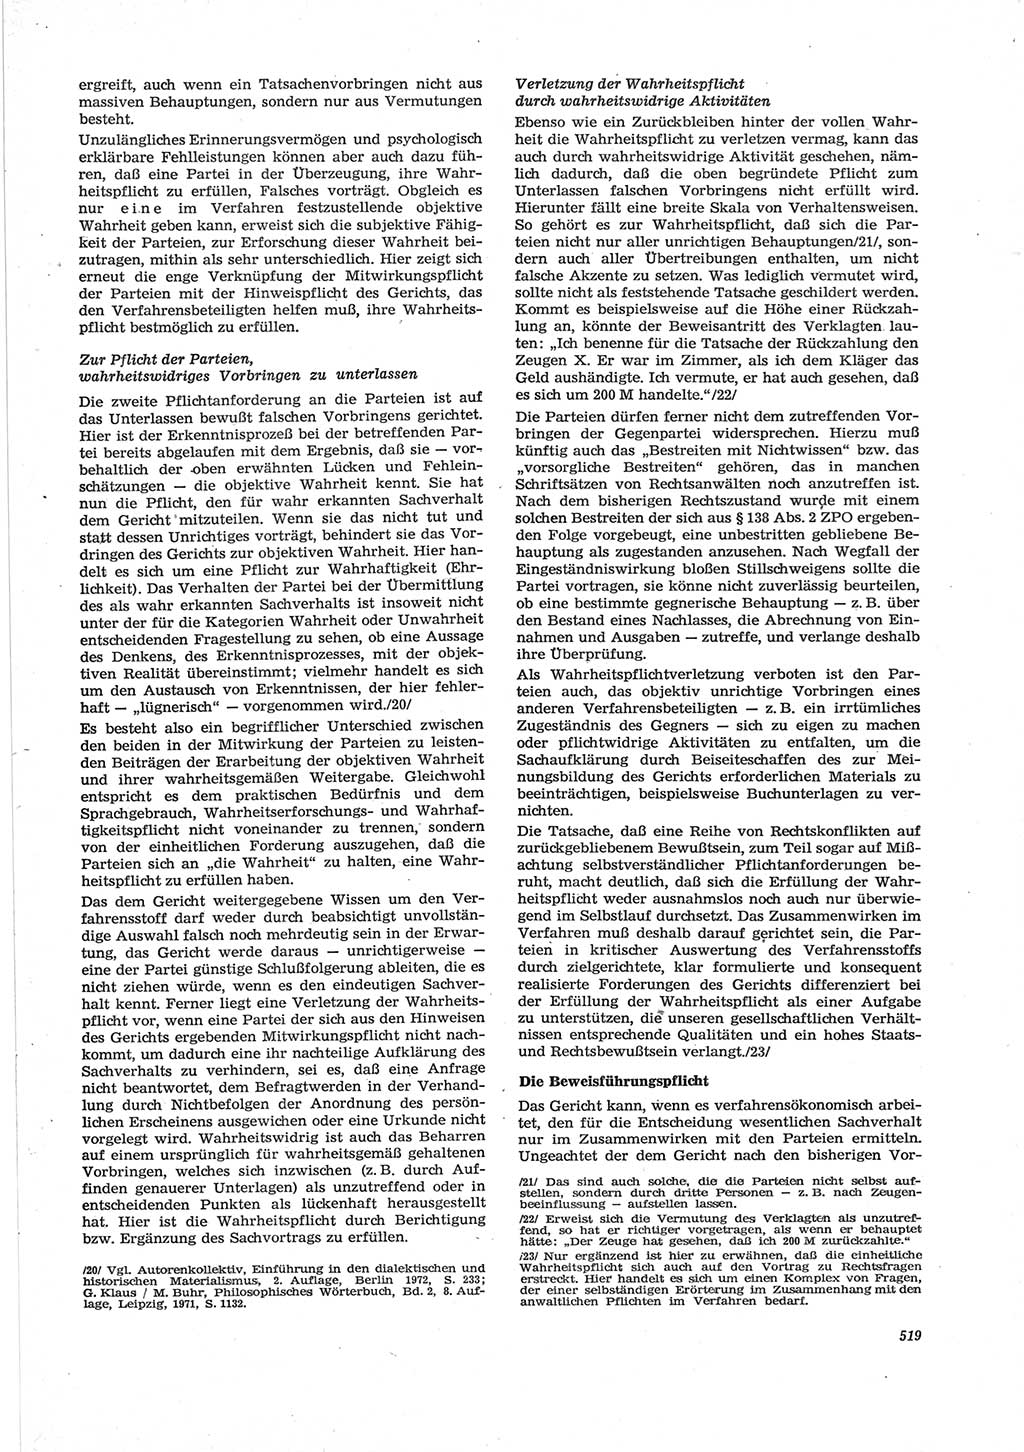 Neue Justiz (NJ), Zeitschrift für Recht und Rechtswissenschaft [Deutsche Demokratische Republik (DDR)], 28. Jahrgang 1974, Seite 519 (NJ DDR 1974, S. 519)